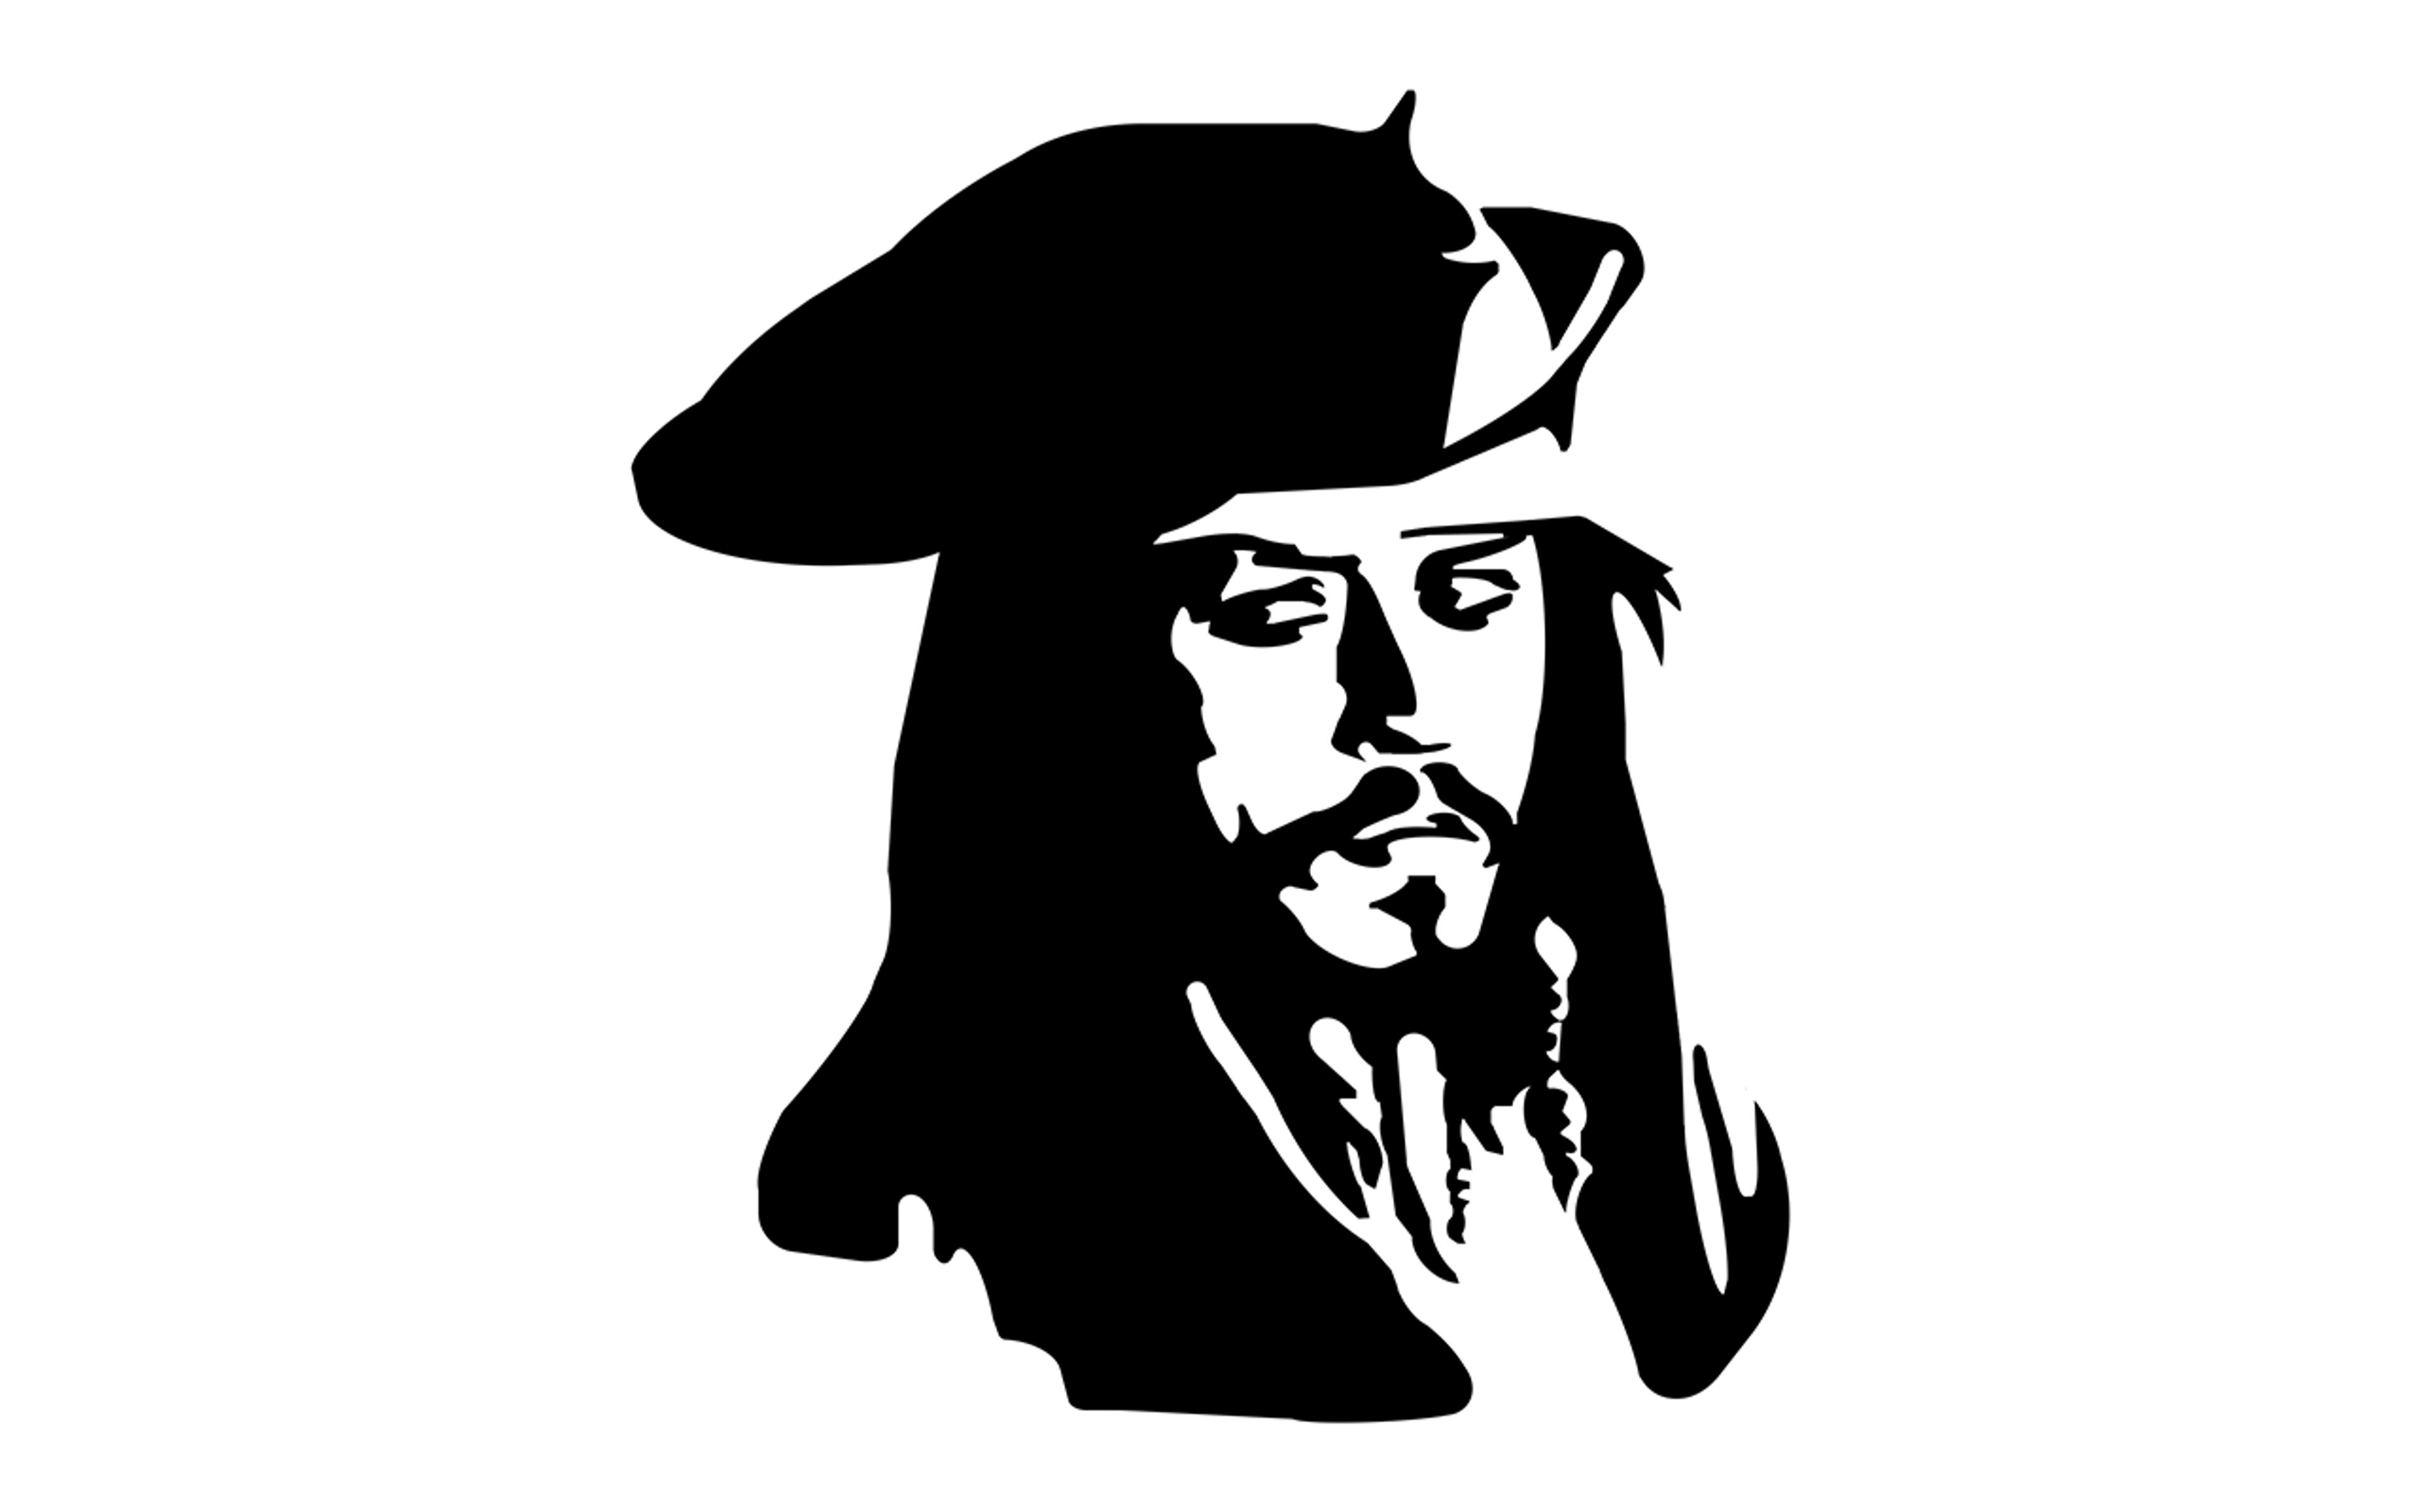 Captain Jack Sparrow image